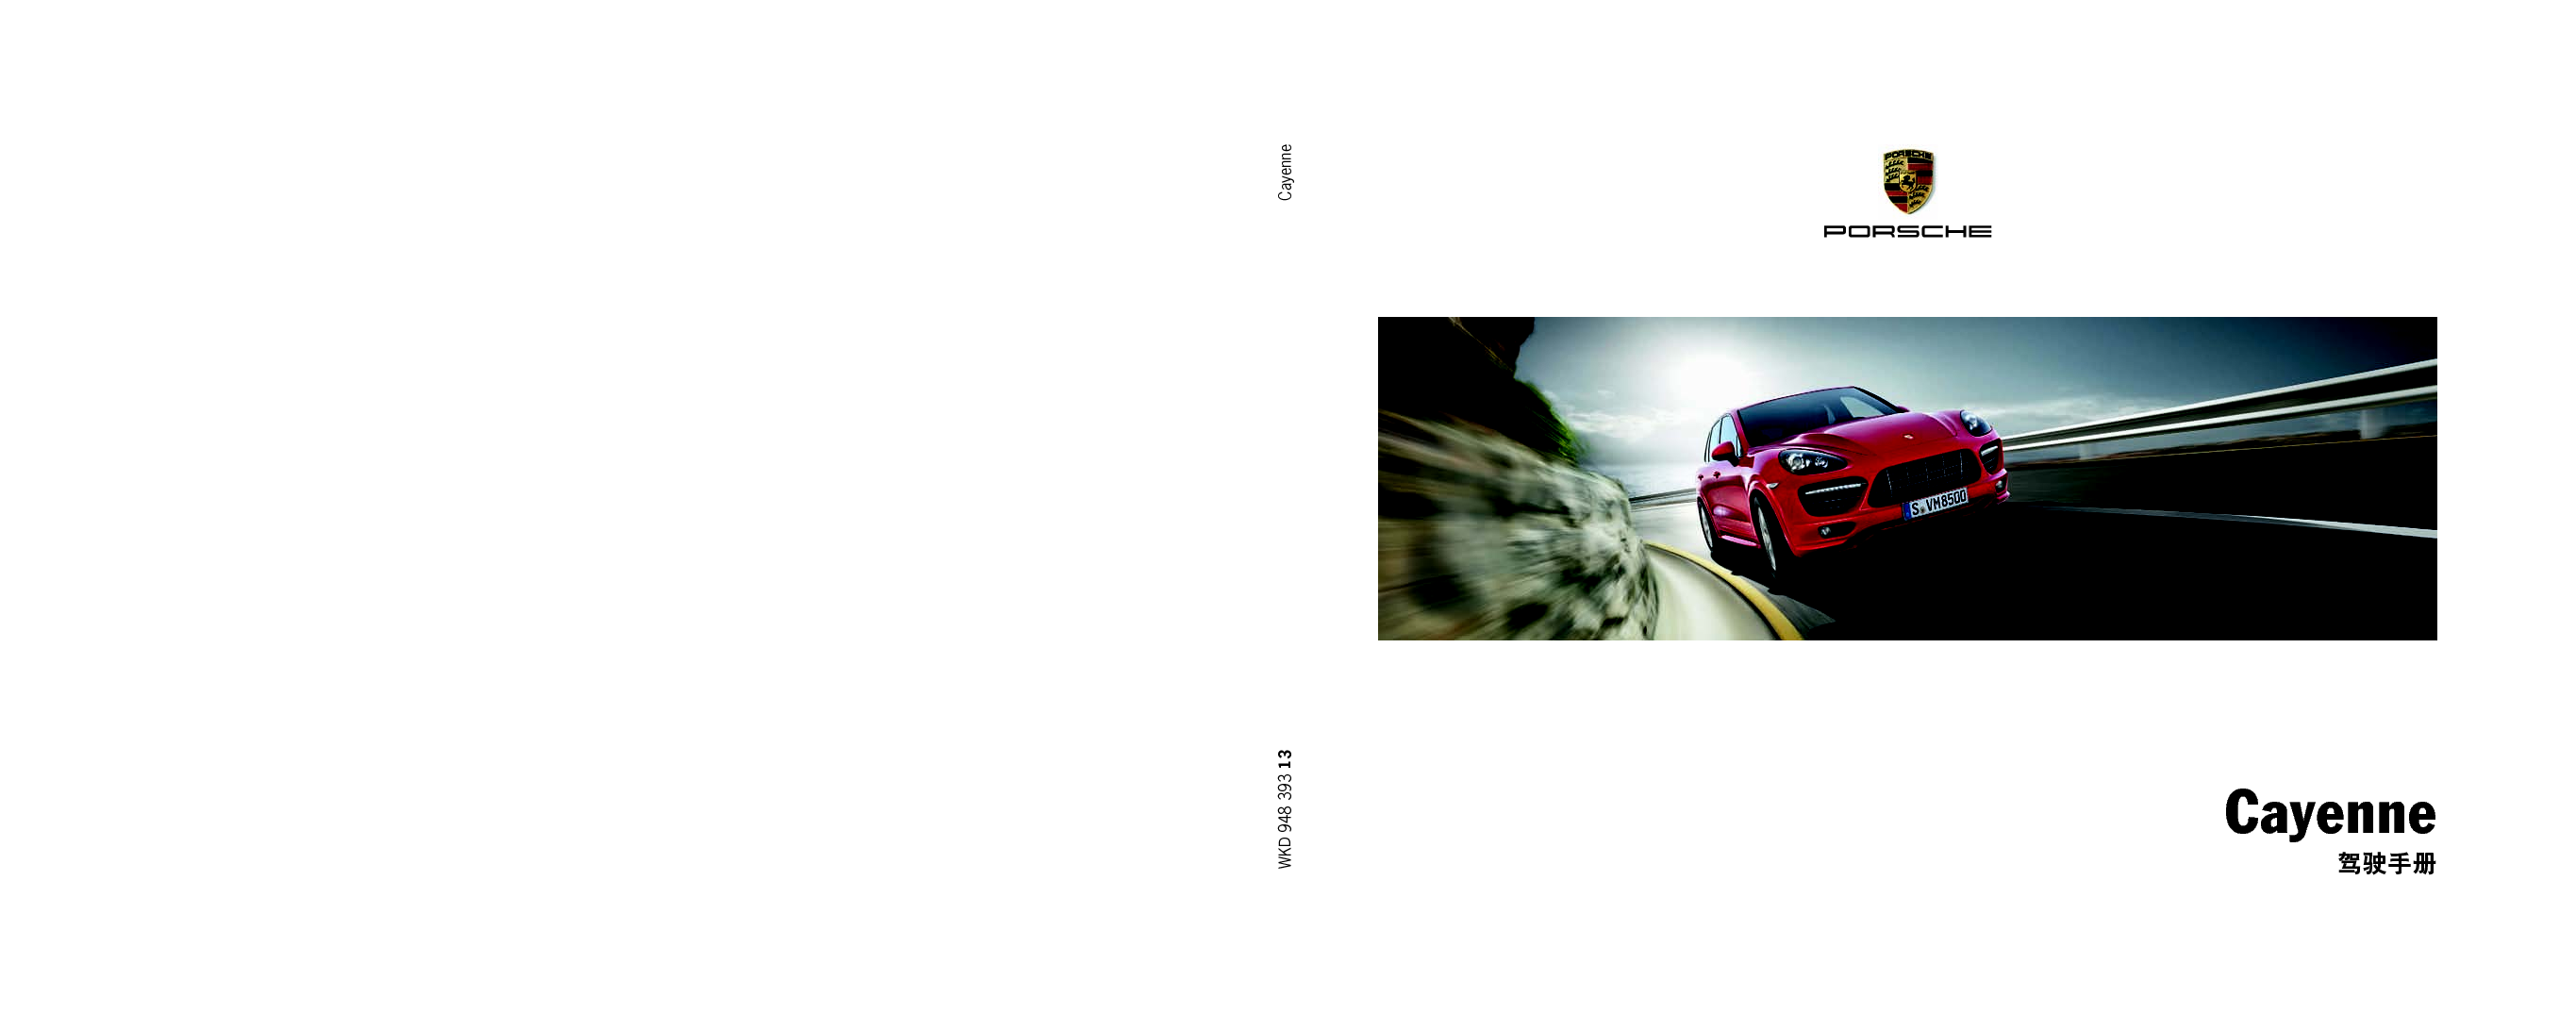 保时捷 Porsche Cayenne 02/2012 使用说明书 封面